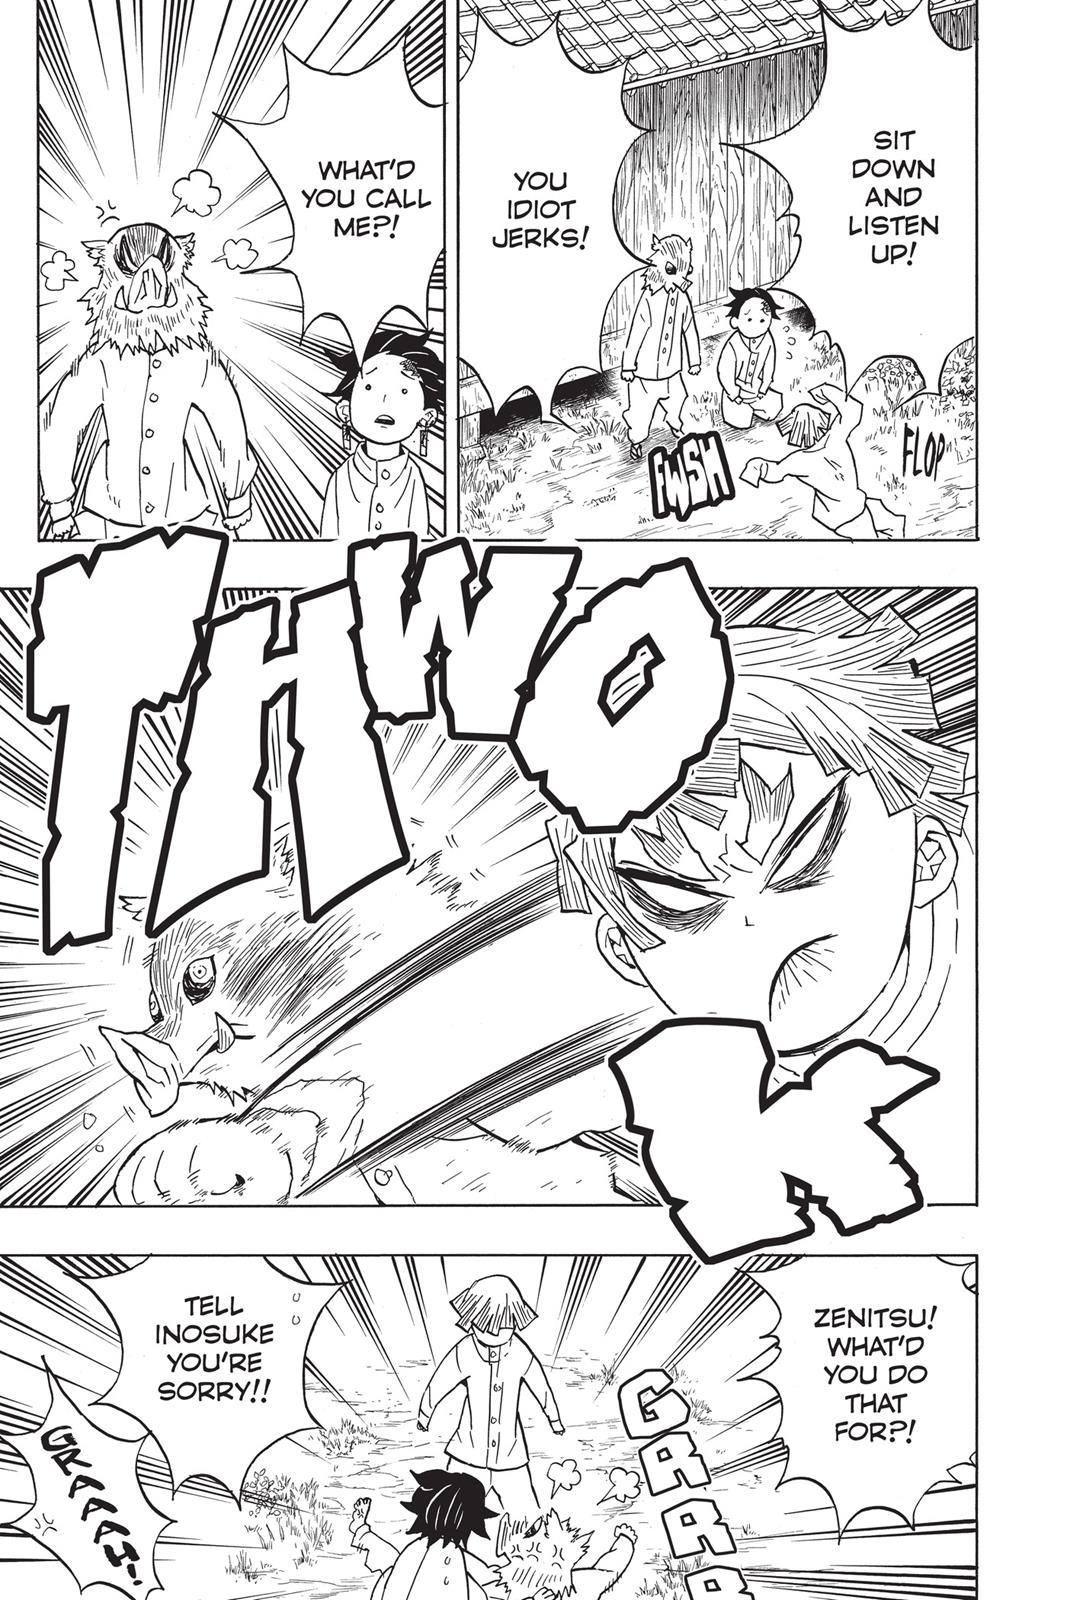 Demon Slayer Manga Manga Chapter - 49 - image 7